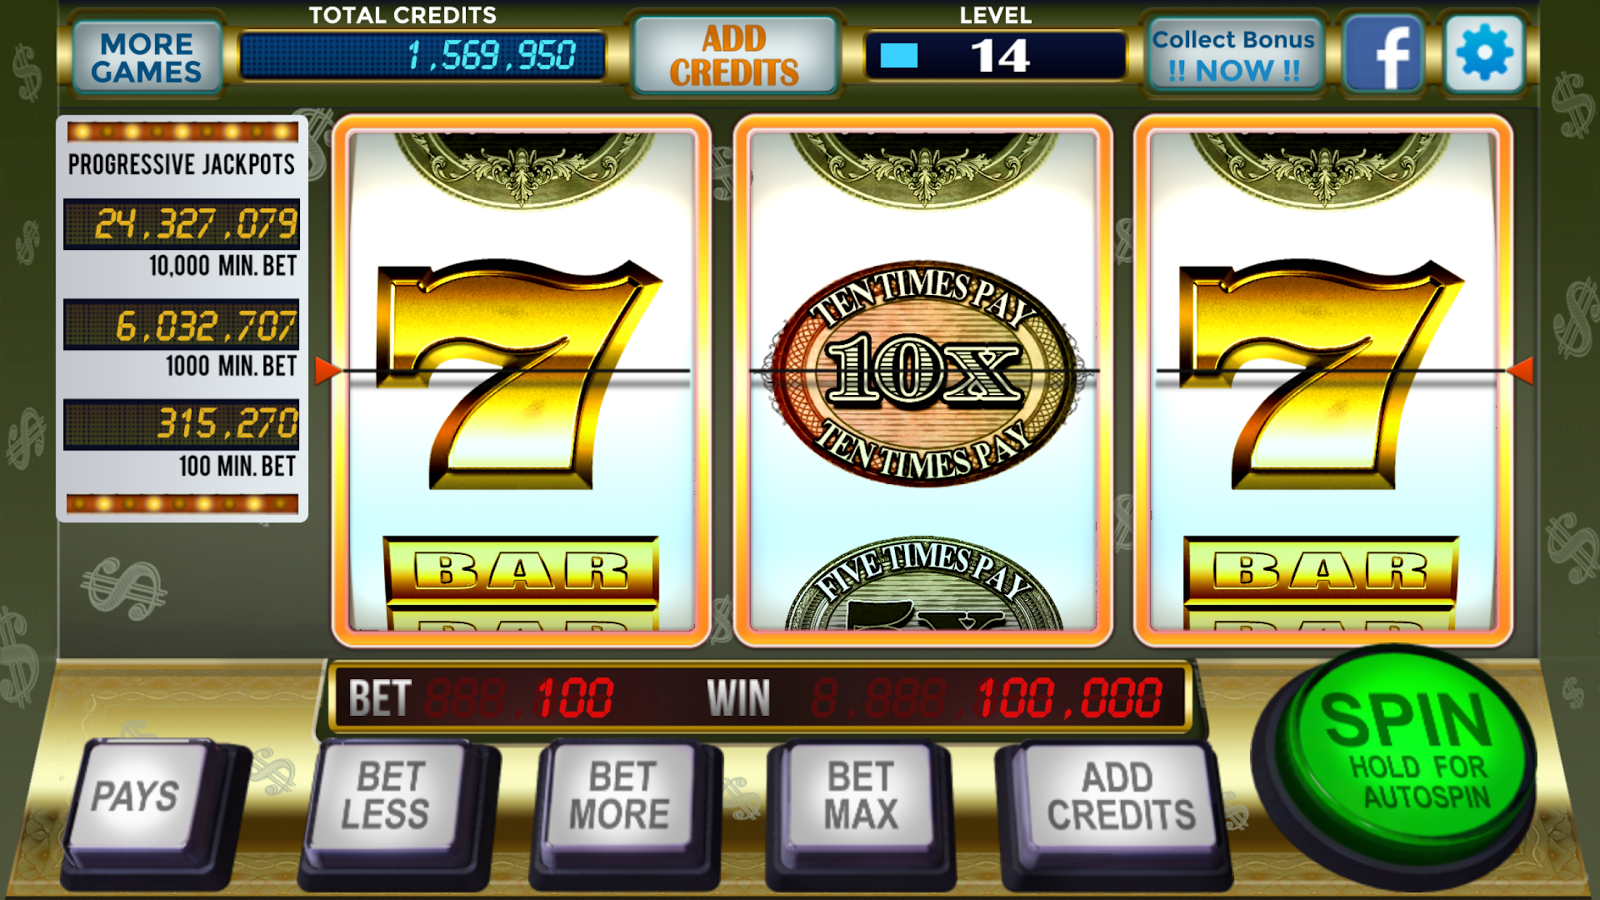 Gratis casino bonus iGame farm